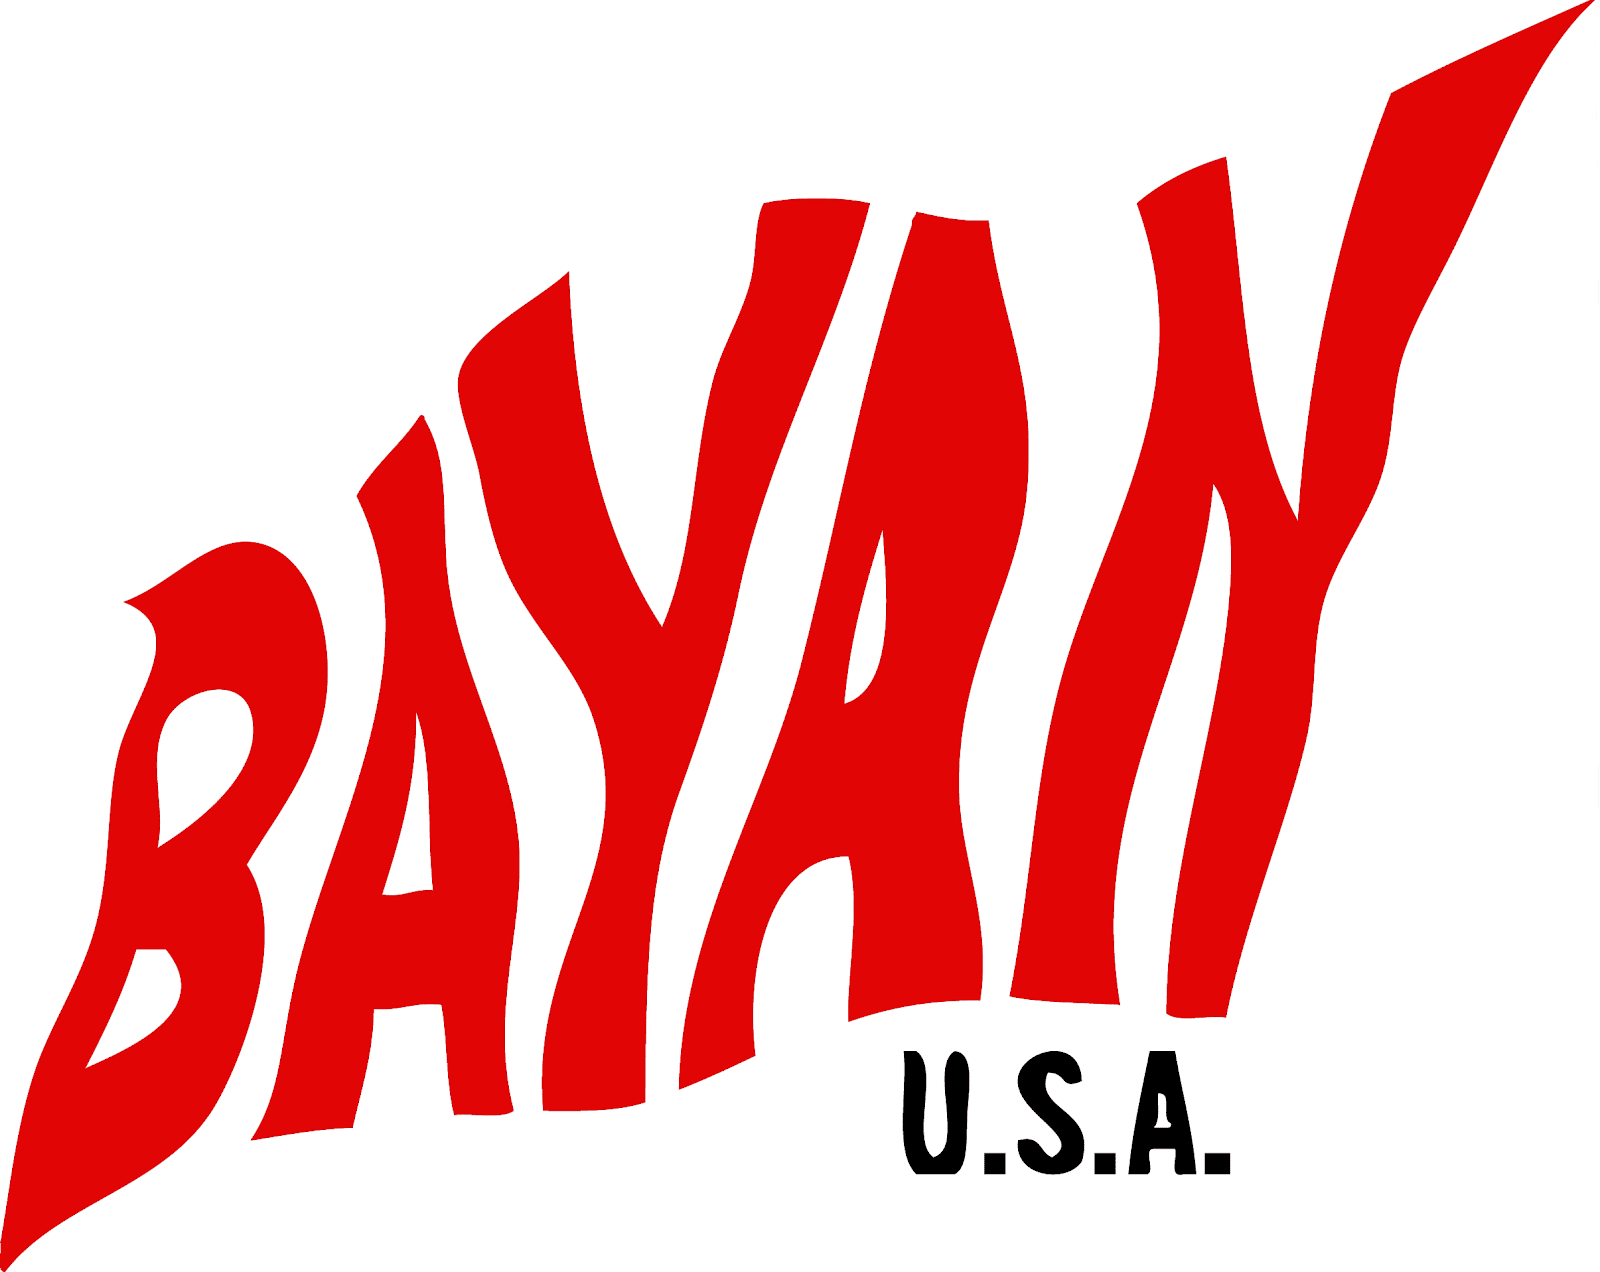 bayan-usa-logo-large-red.png